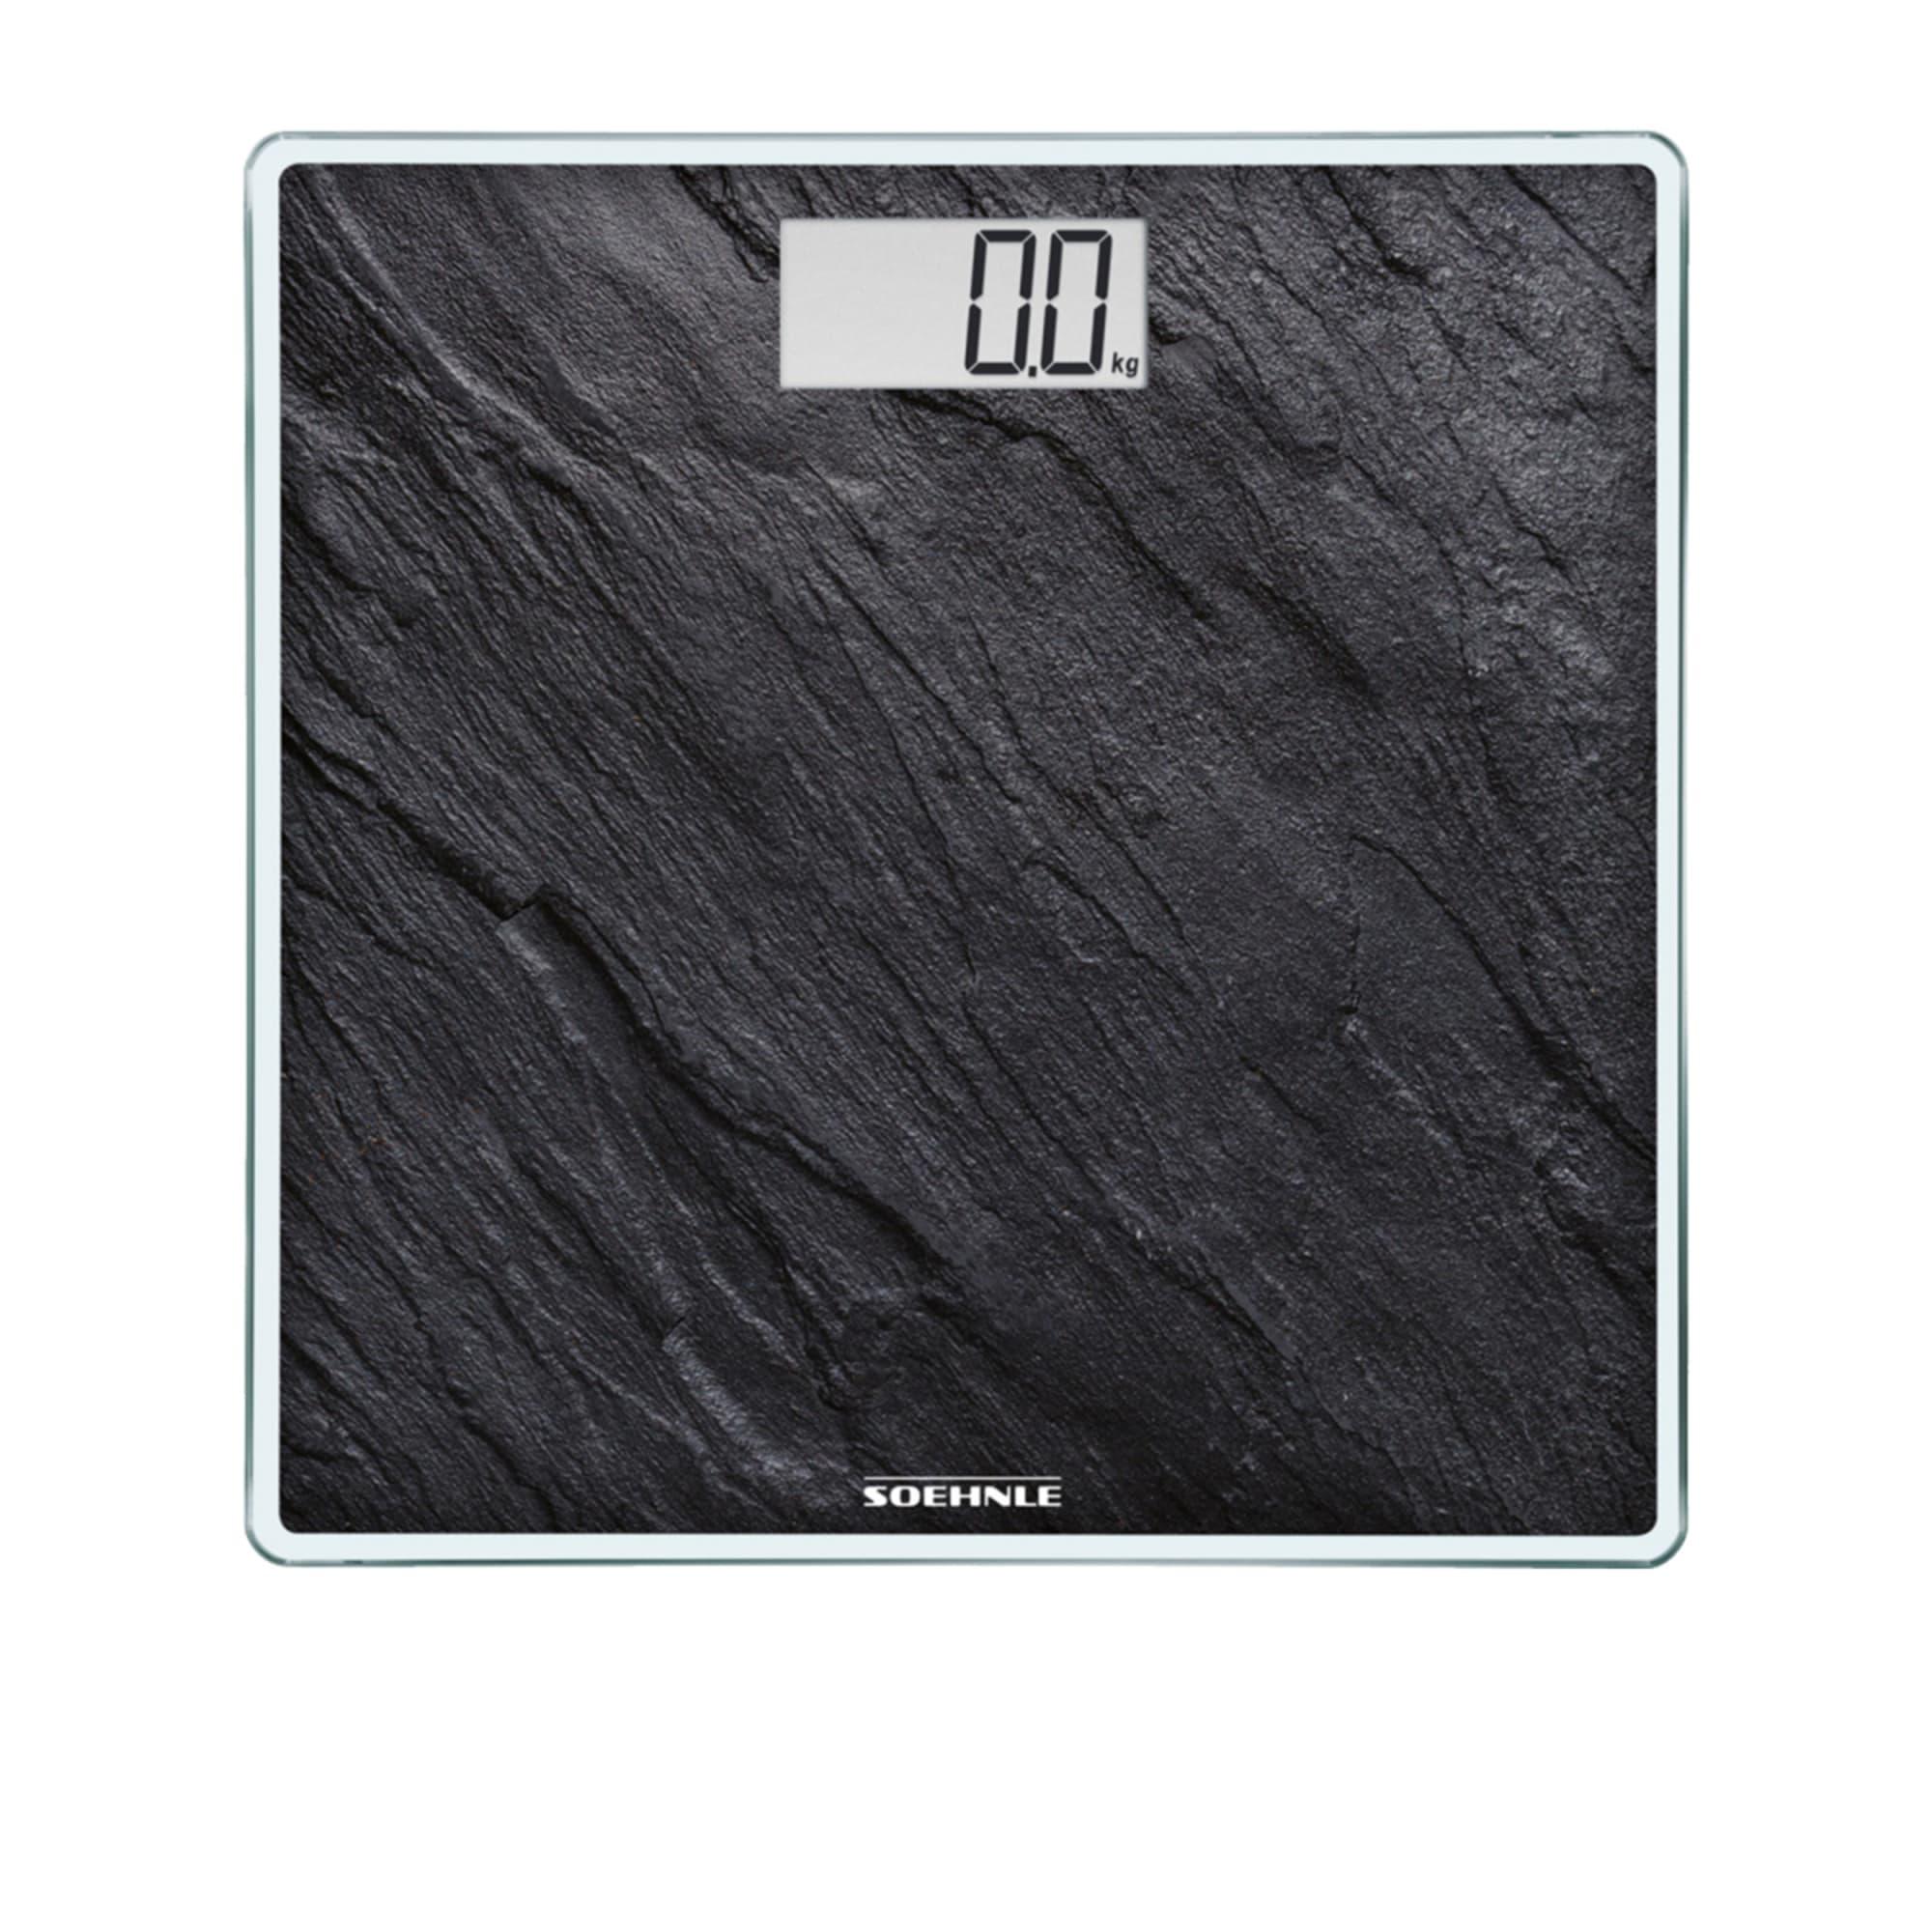 Soehnle Style Sense Compact 300 Bathroom Scale Black Image 1